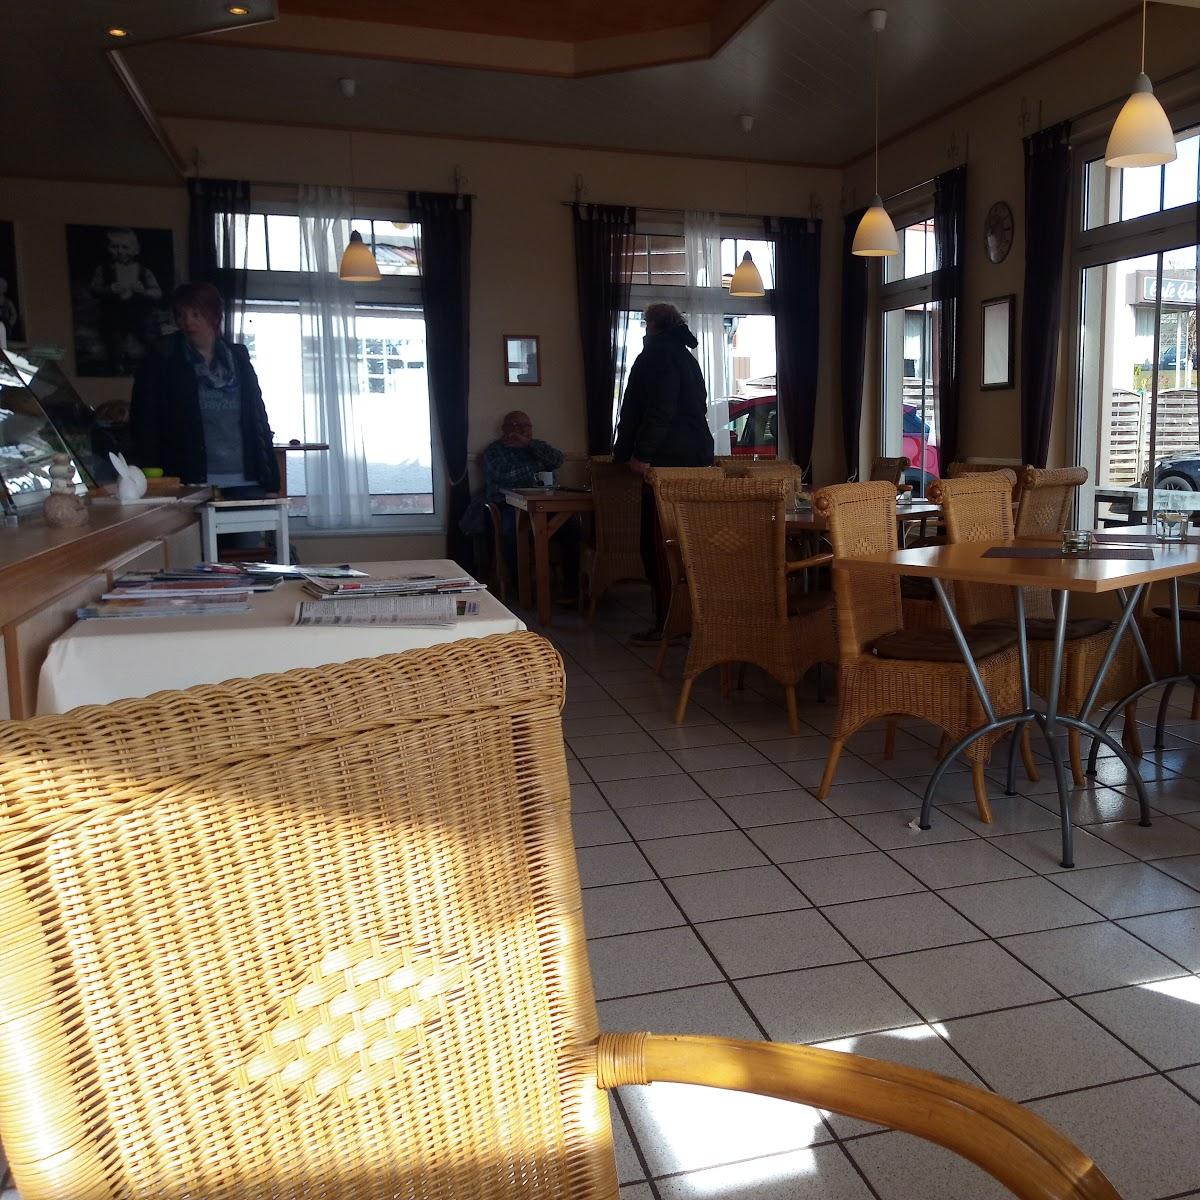 Restaurant "Café Petit" in Bleialf